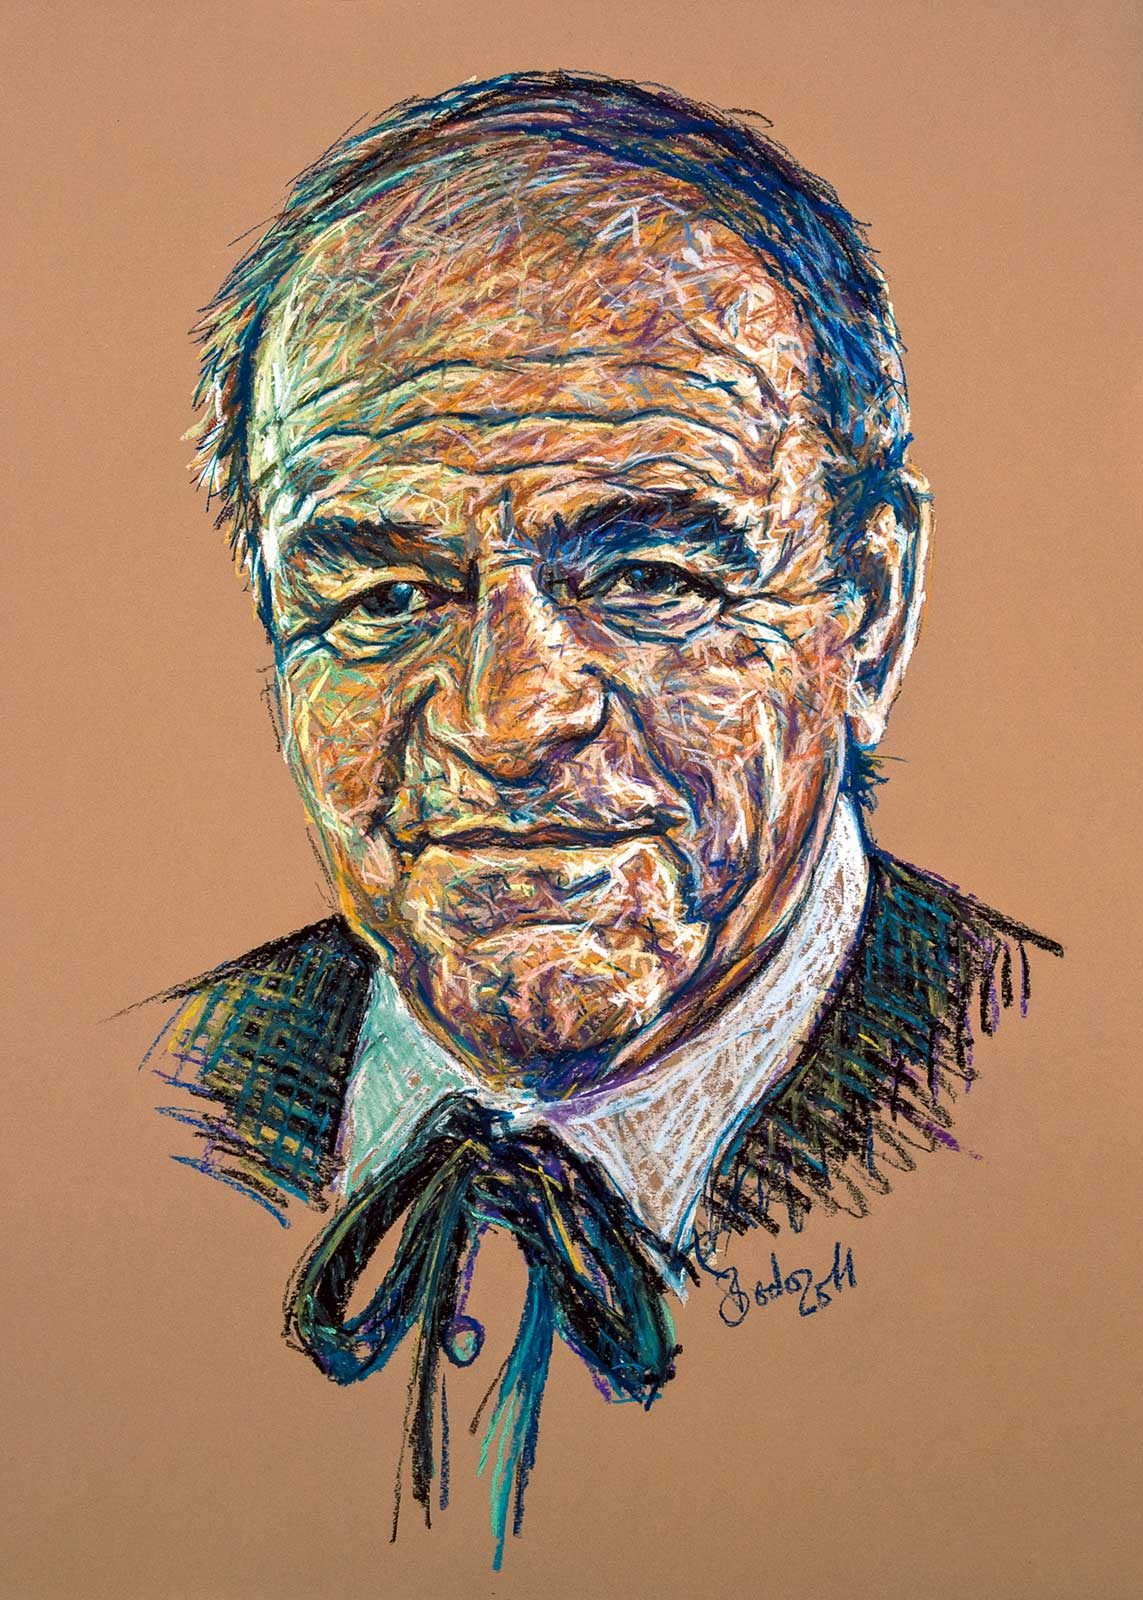 Portrait drawing of Theo in pastels on brown paper; Farbenfrohes Porträt von Theo in Pastellkreide auf braunem Papier